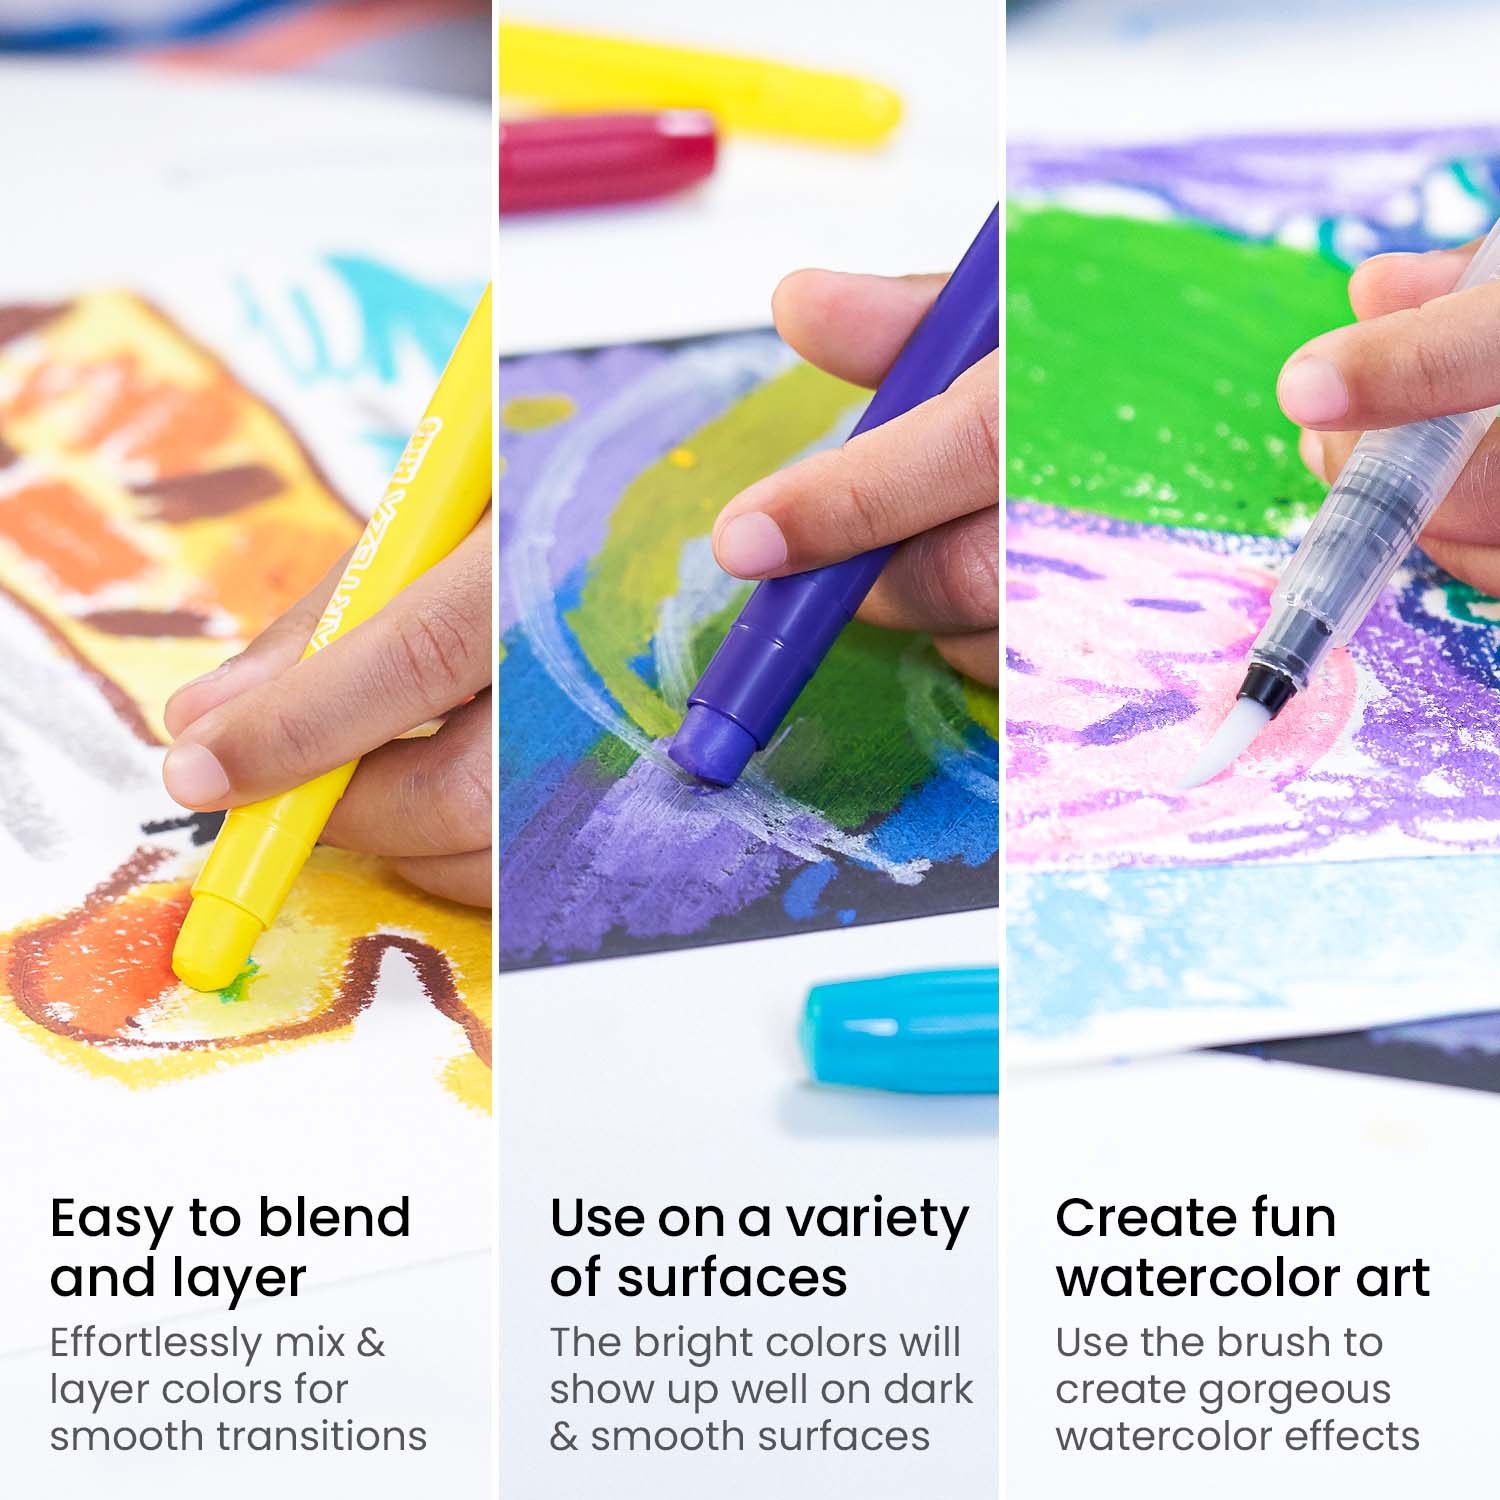 Toyshine 36 Pcs Colors Twist Crayon Colors Set for Kids, Coloring Kit